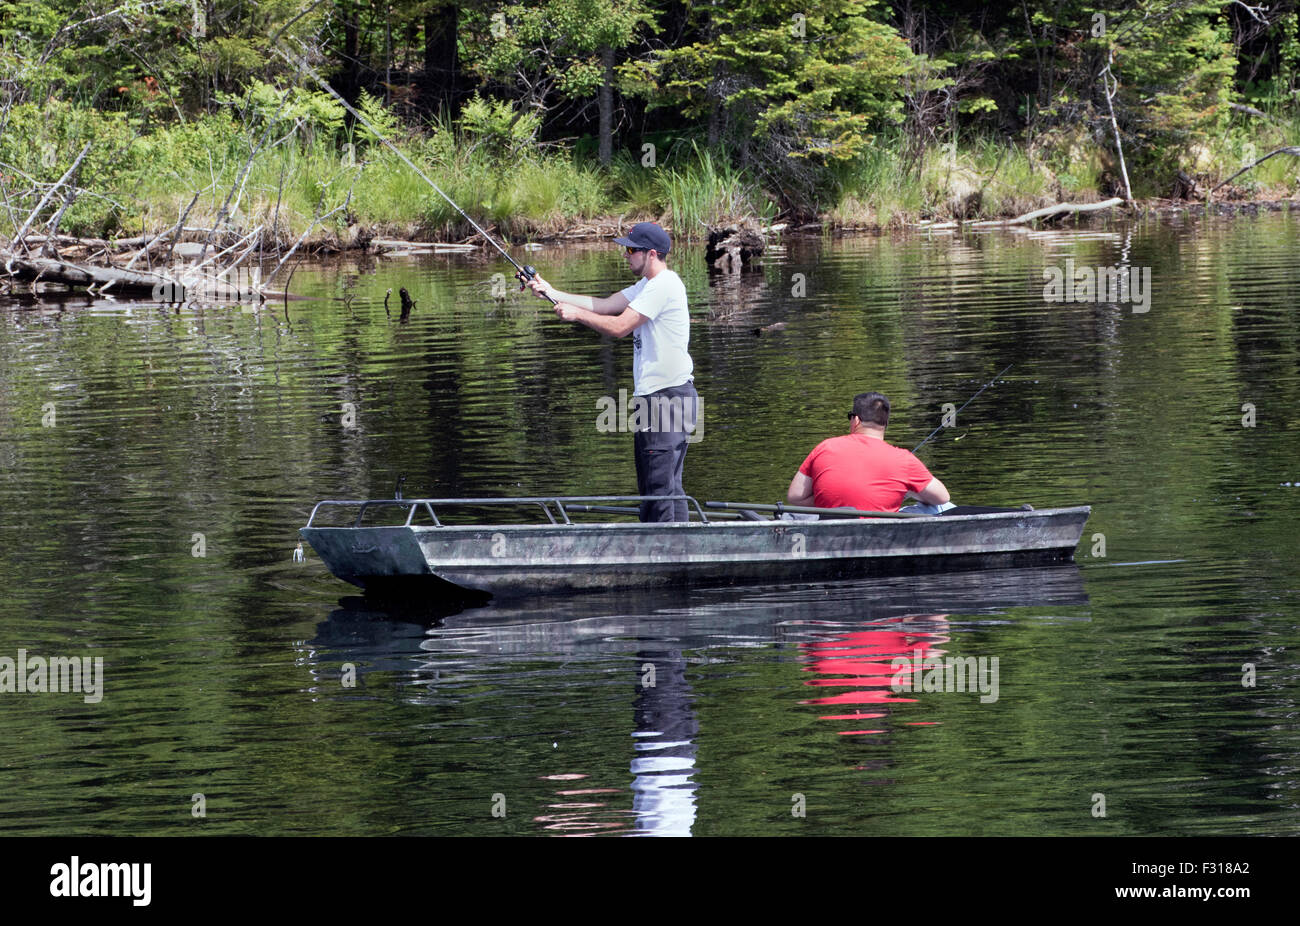 Zwei junge Männer Jugendliche Angeln von einem Ruderboot See Adirondack New York USA uns Amerika Adirondack State Park Adirondacks Stockfoto